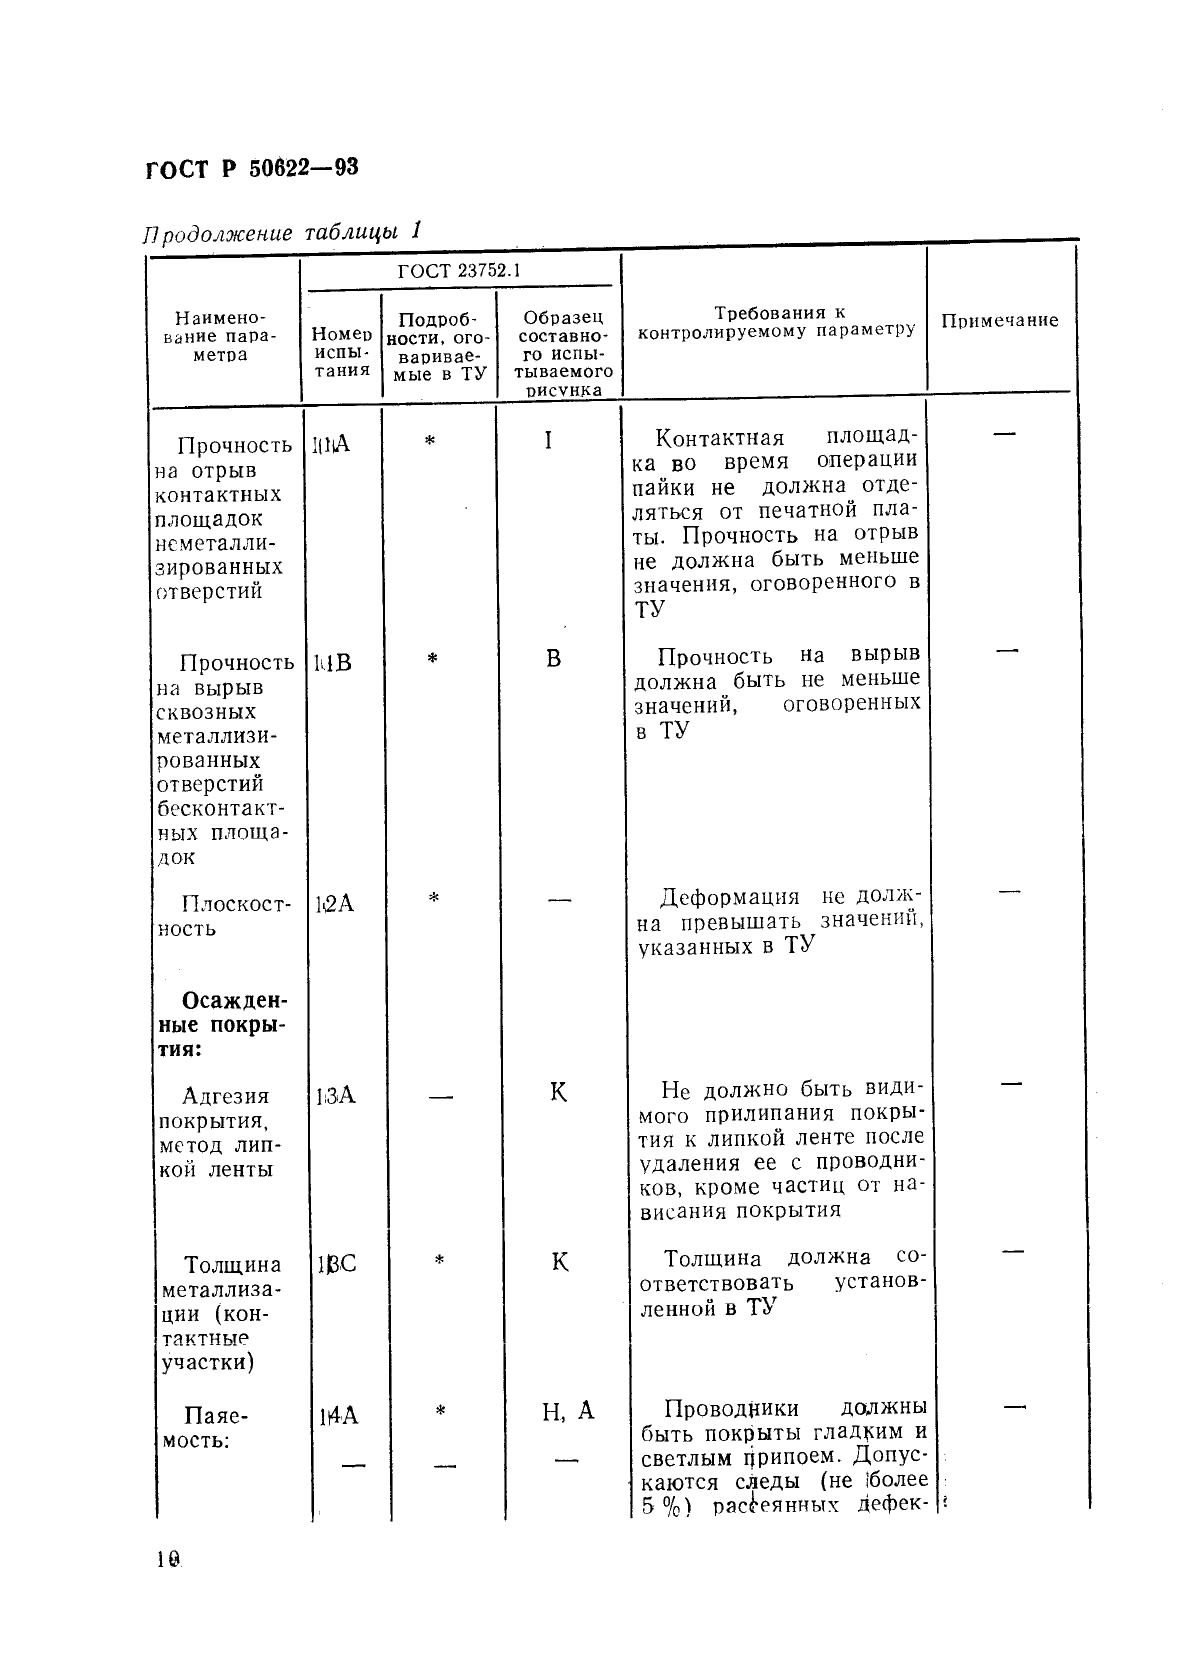 ГОСТ Р 50622-93 Платы печатные двусторонние с металлизированными отверстиями. Общие технические требования (фото 13 из 22)